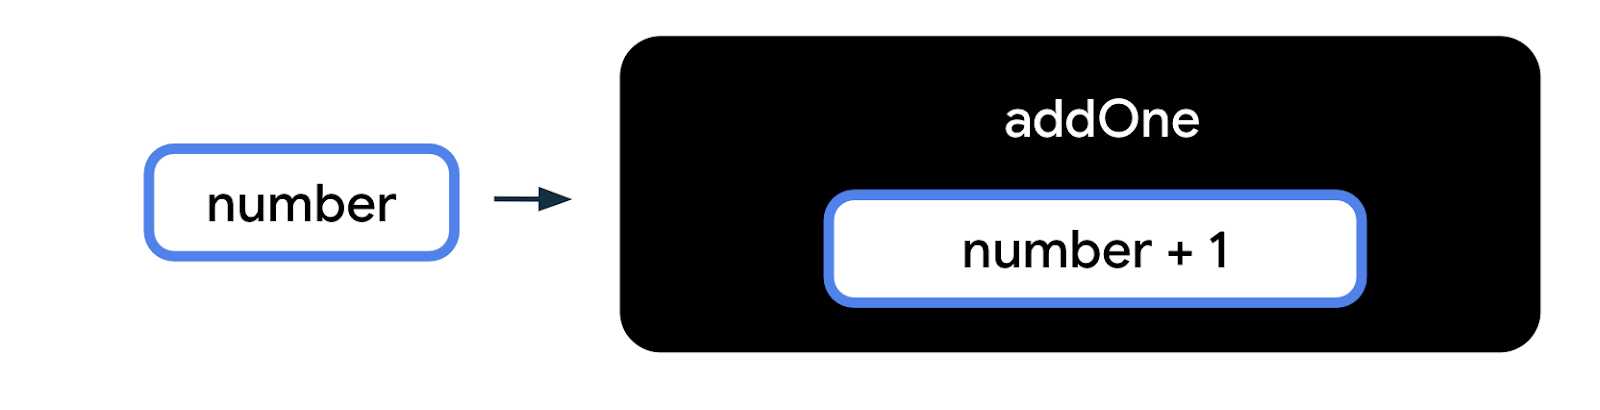 Sơ đồ này biểu thị hàm dưới dạng một hộp màu đen có nhãn "addOne" (thêmMột) trên đó, đó là tên hàm. Trong hộp function (hàm) là một hộp nhỏ hơn, đại diện cho phần thân hàm. Bên trong hộp body (phần thân) của hàm, có văn bản "number + 1" (số+1). Bên ngoài hộp màu đen của hàm, còn có một hộp có nhãn "number" (số) với mũi tên chỉ vào hộp màu đen của hàm. Số này là một dữ liệu đầu vào của hàm. 